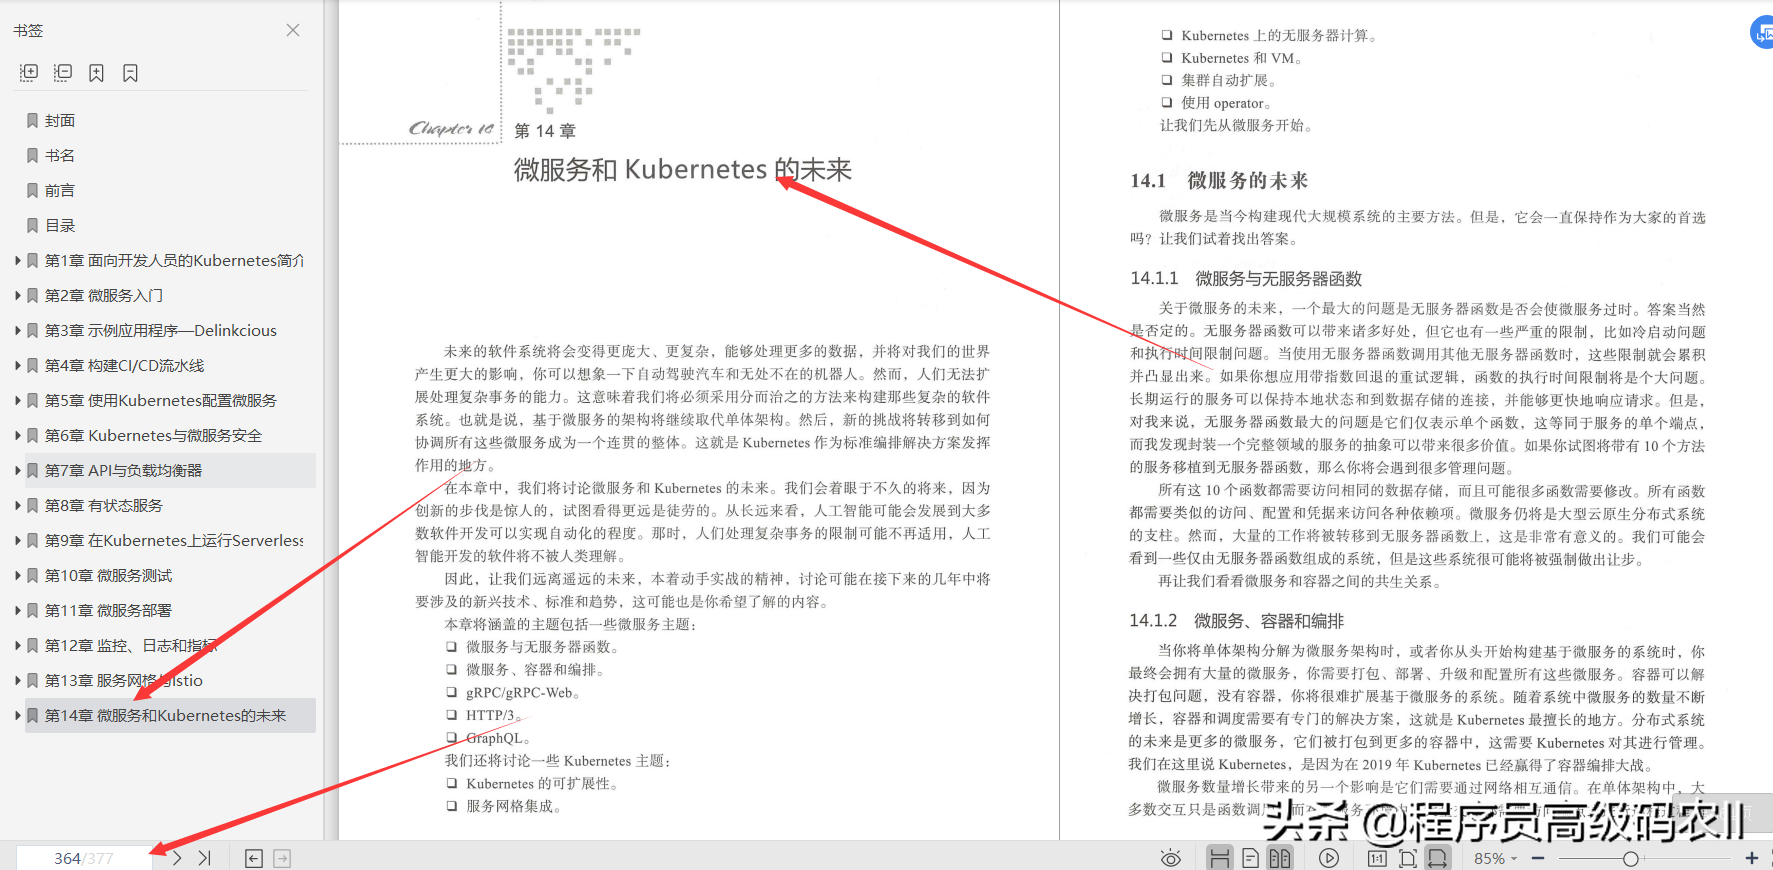 谷歌高级架构师十年心血终成Kubernetes微服务实战文档